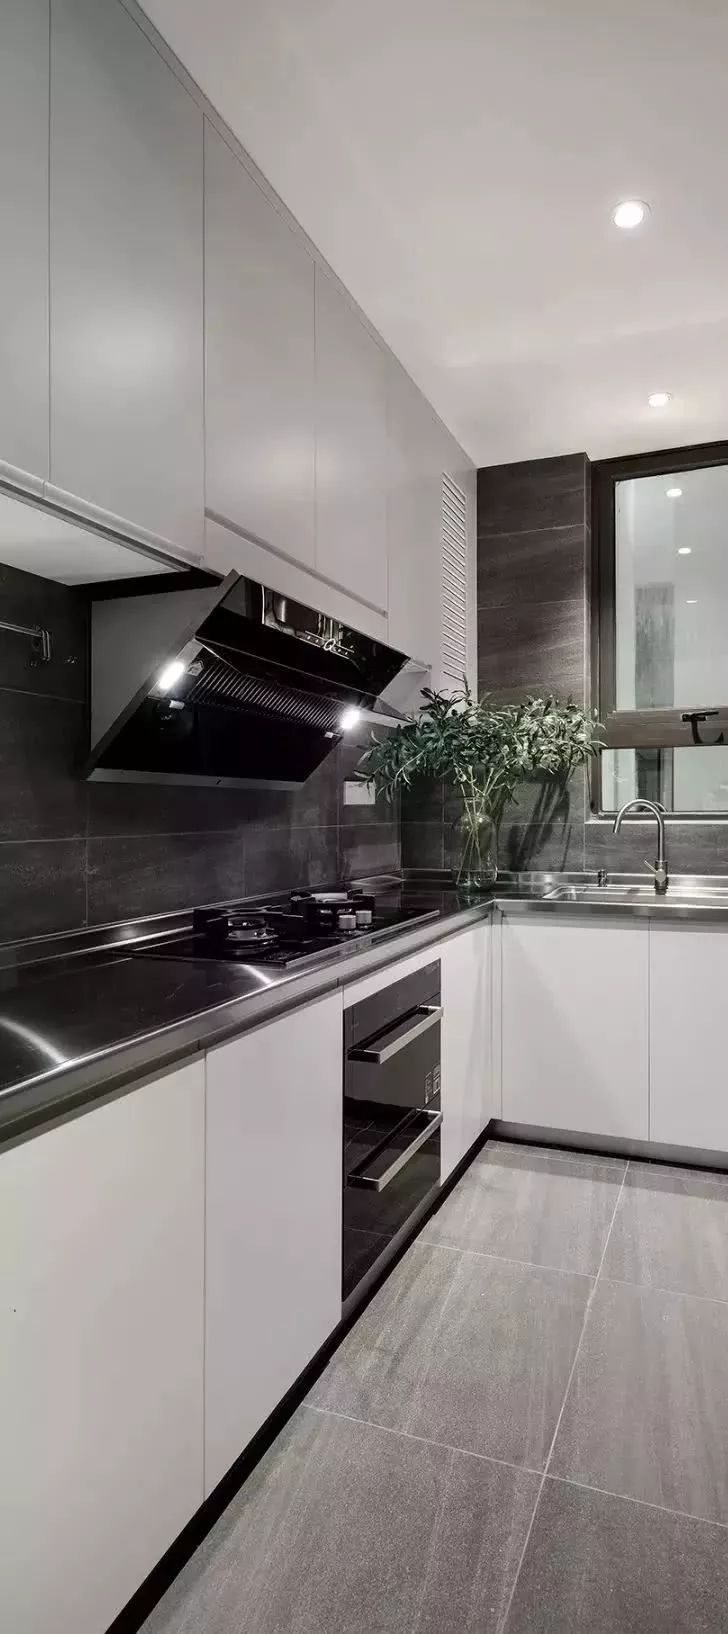 厨房的深灰色墙面 浅灰色地面 不锈钢台面 白色柜体,既给人时尚的感觉